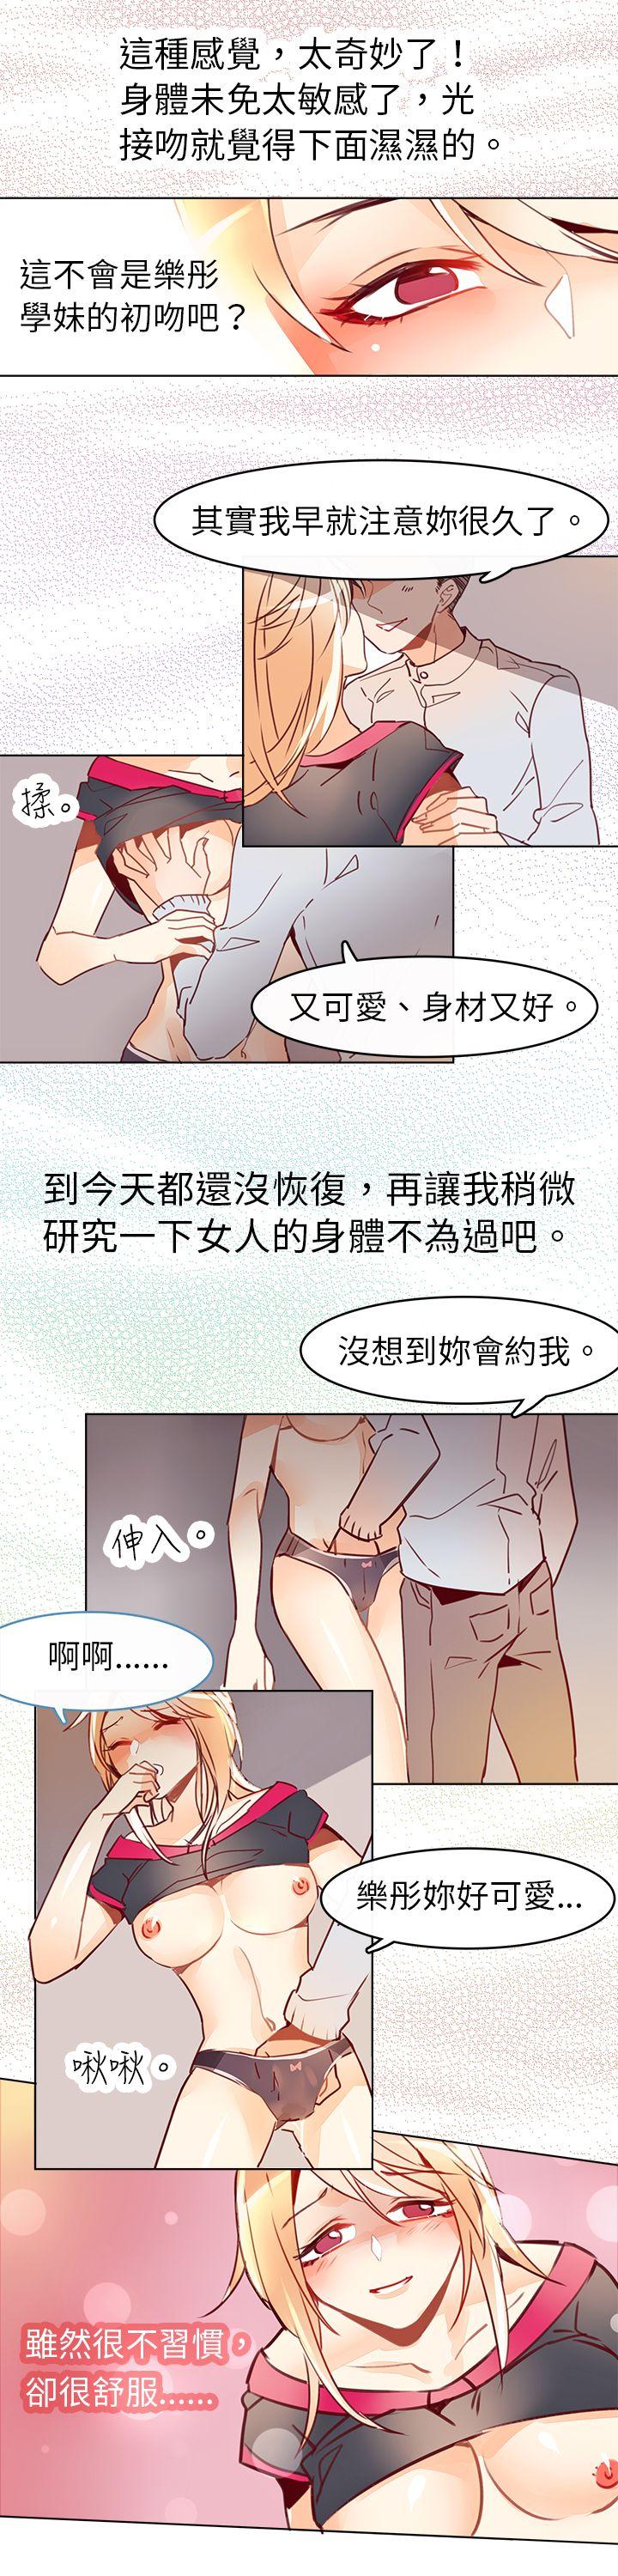 韩国污漫画 危險交換(完結) 第七话 8